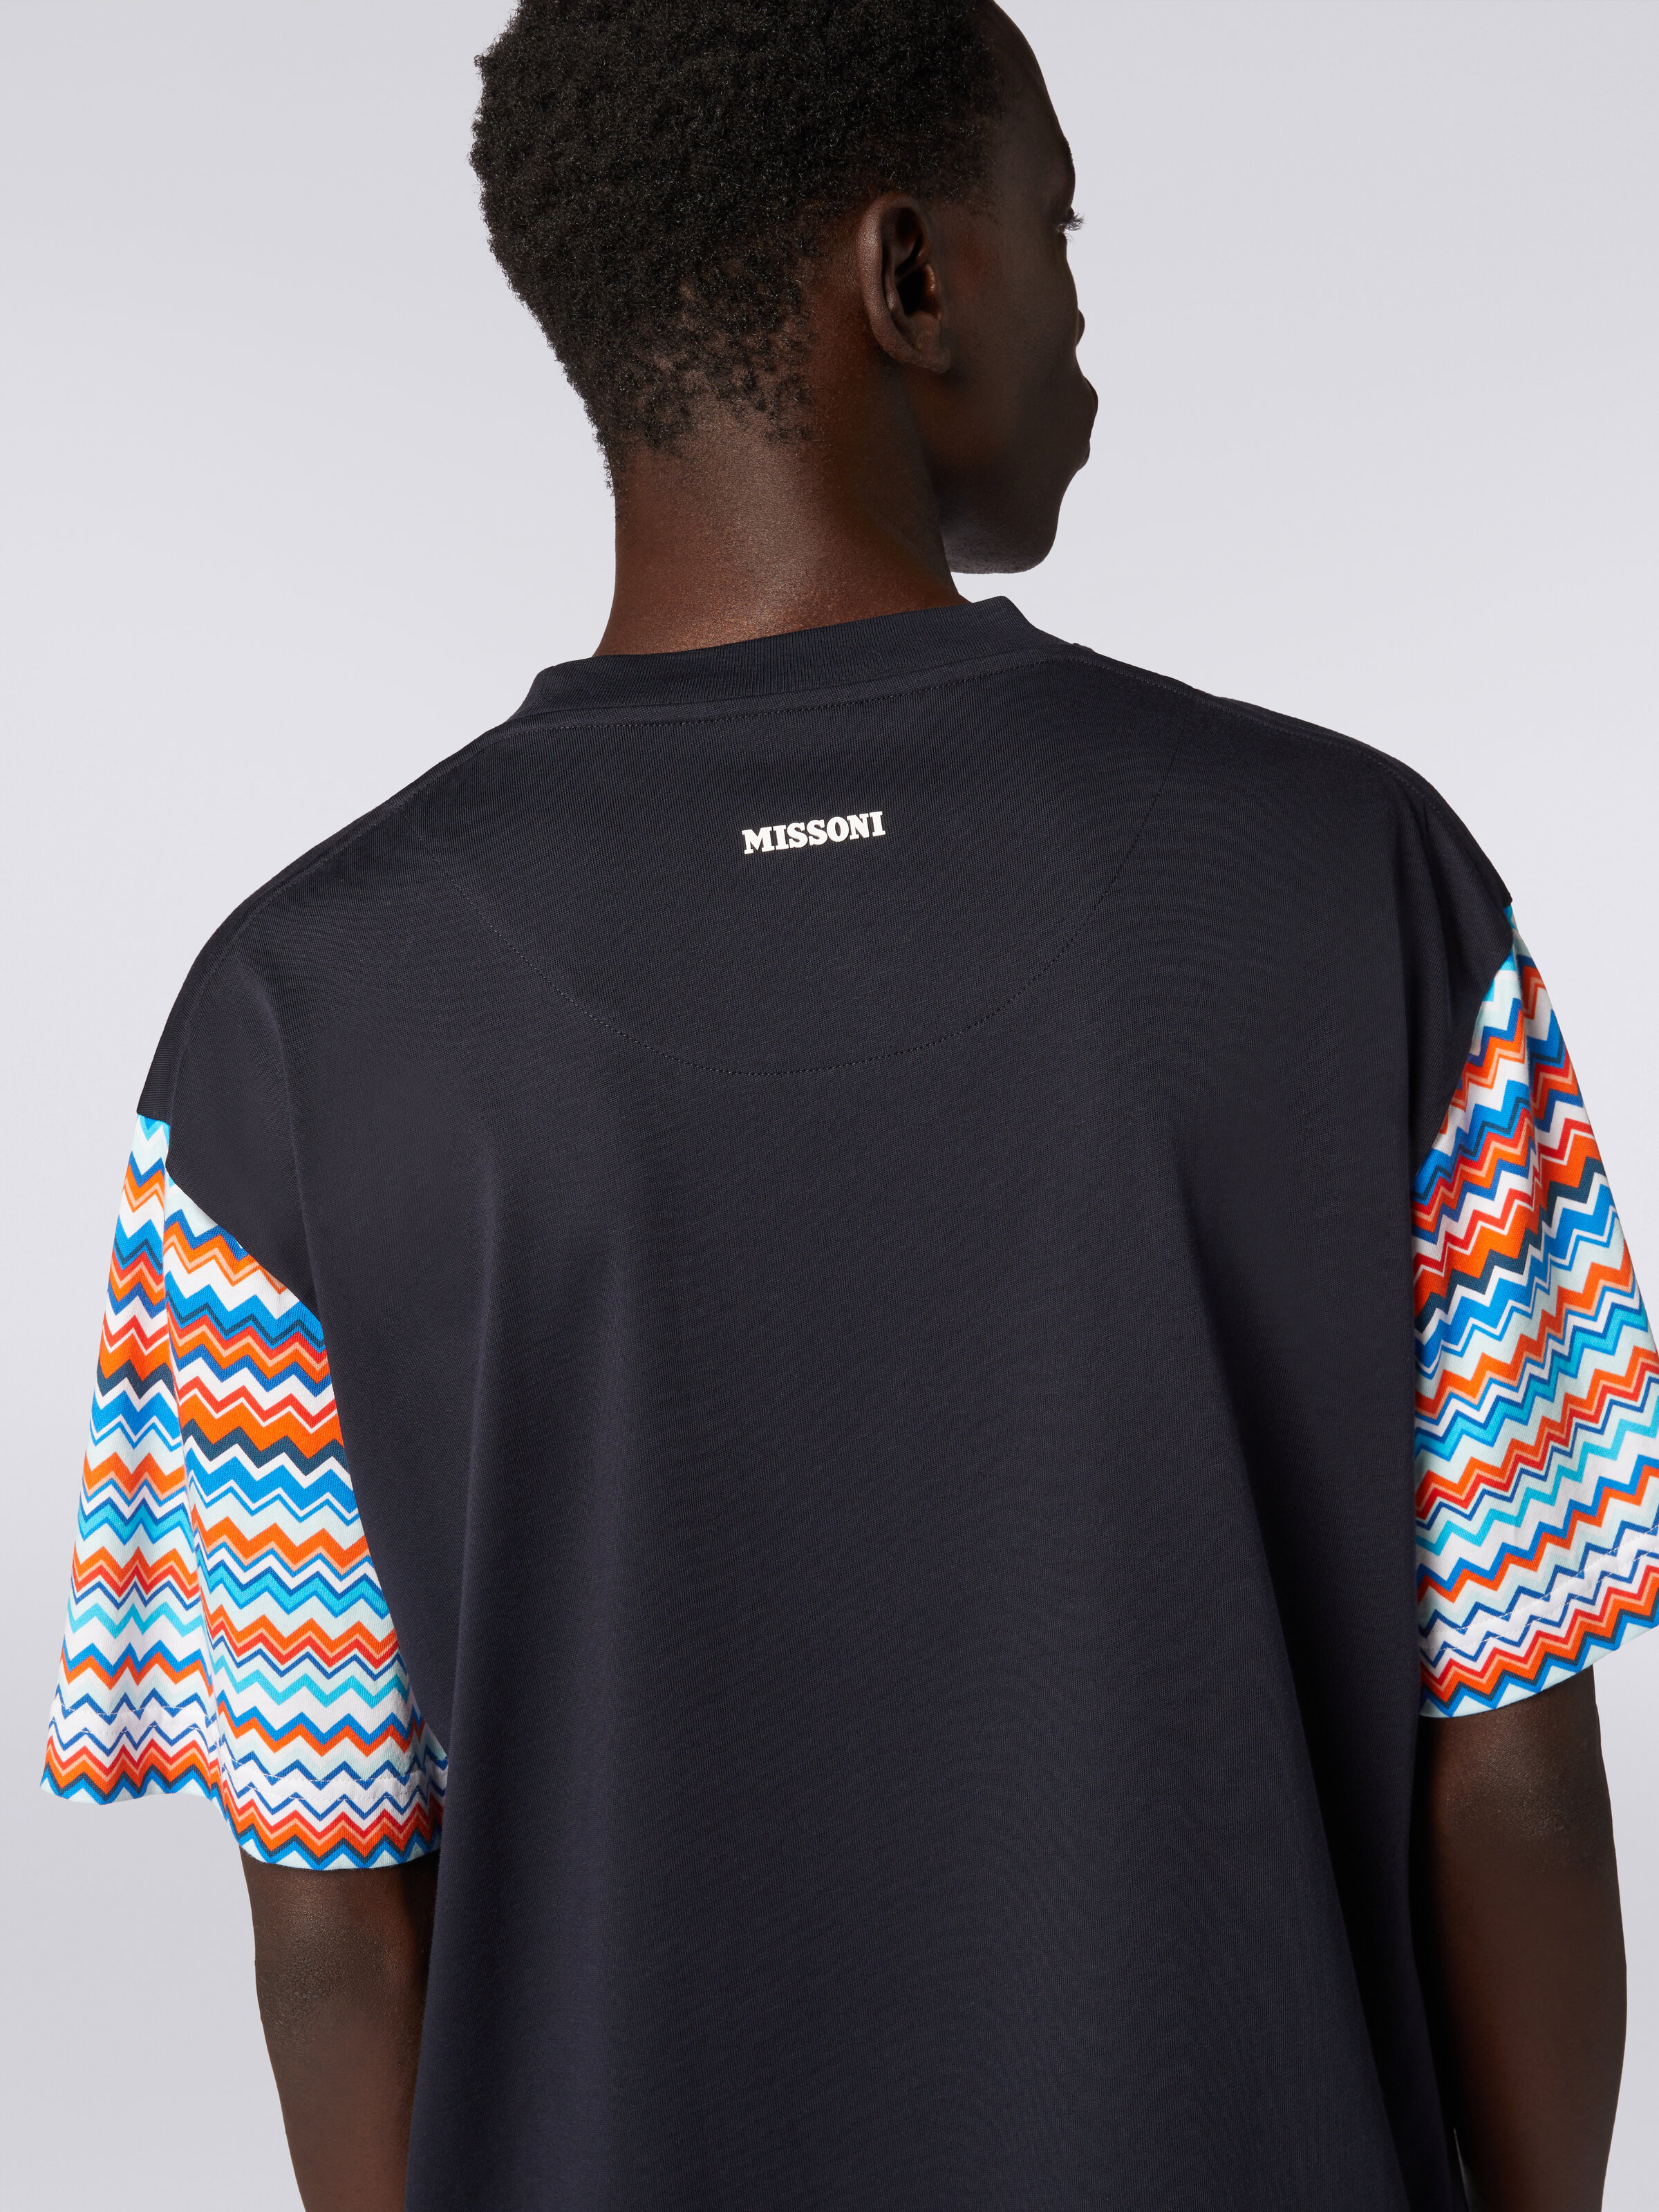 Camiseta extragrande de algodón con inserciones zigzag, Multicolor  - 4